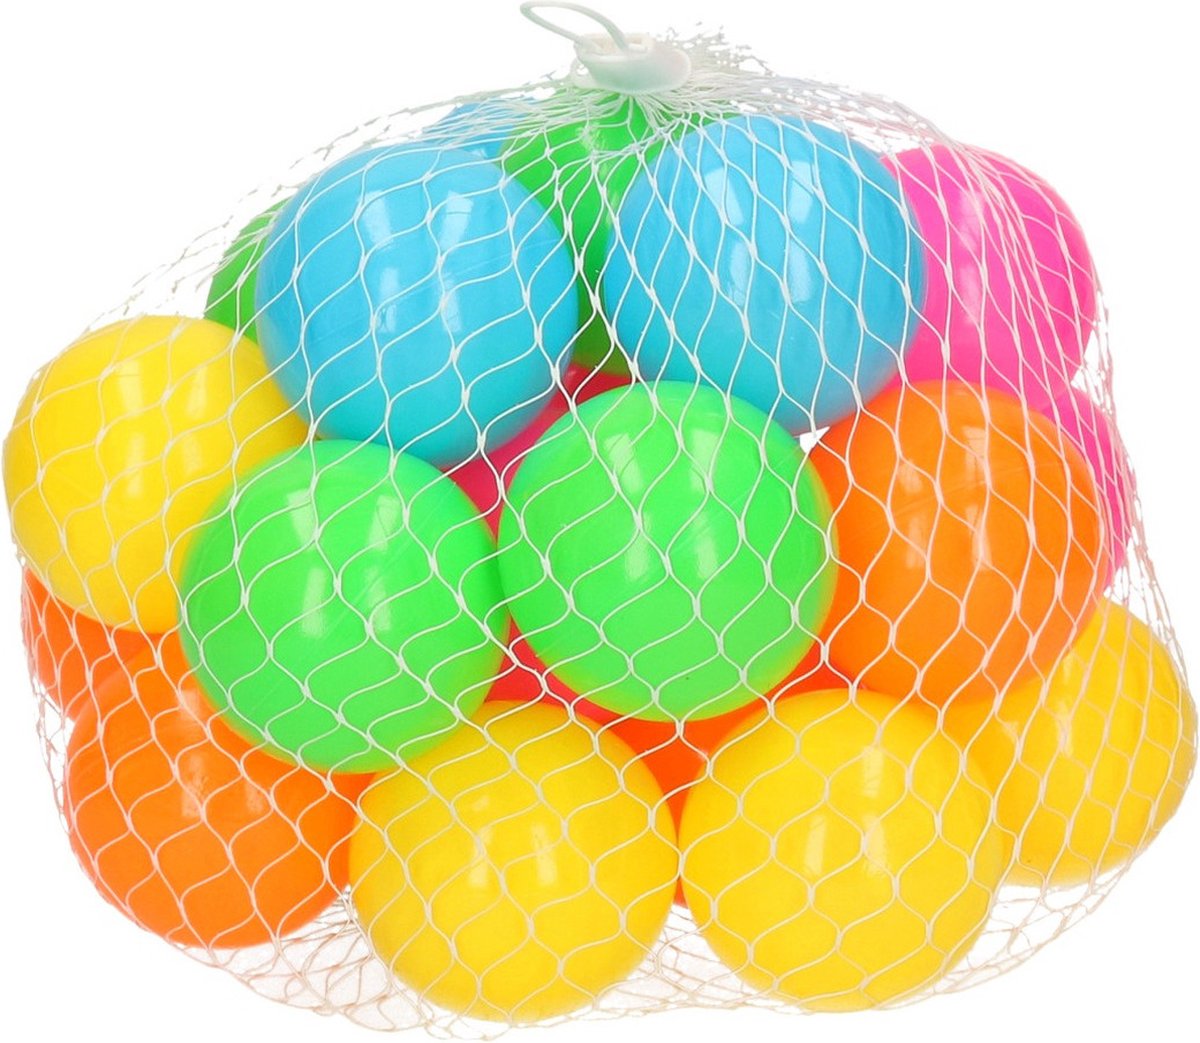 25x Ballenbak ballen neon kleuren 6 cm - Speelgoed - Ballenbakballen in felle kleuren - Merkloos